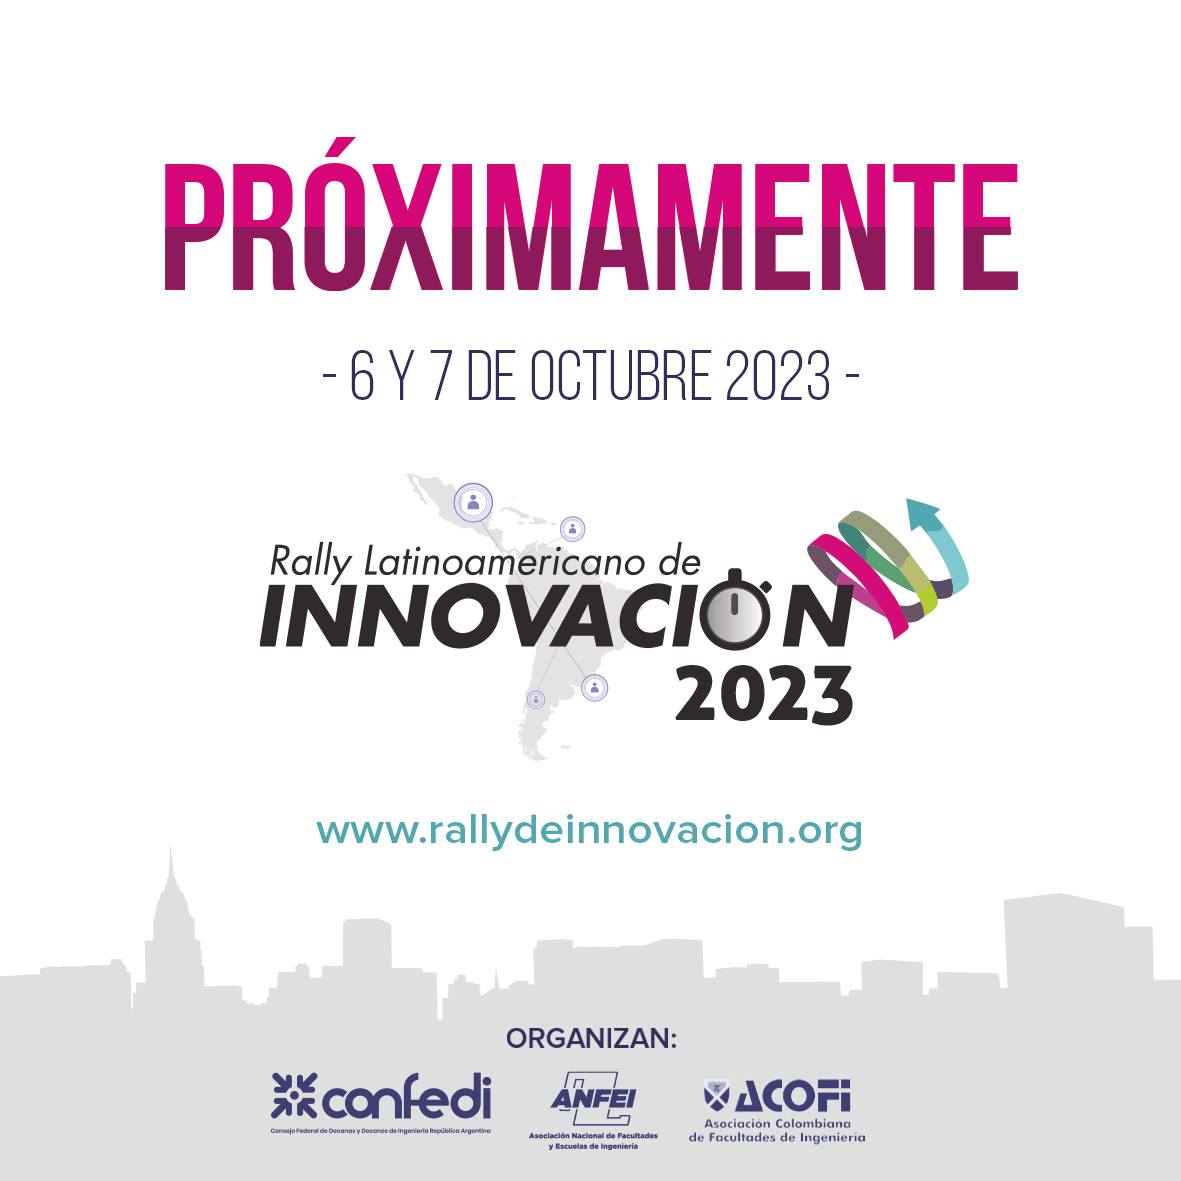 Flyer comunicando que próximamente se realizará el Rally Latinoamericano de Innovación 2023. Siendo sus auspiciantes CONFEDI, AFEI y ACOFI